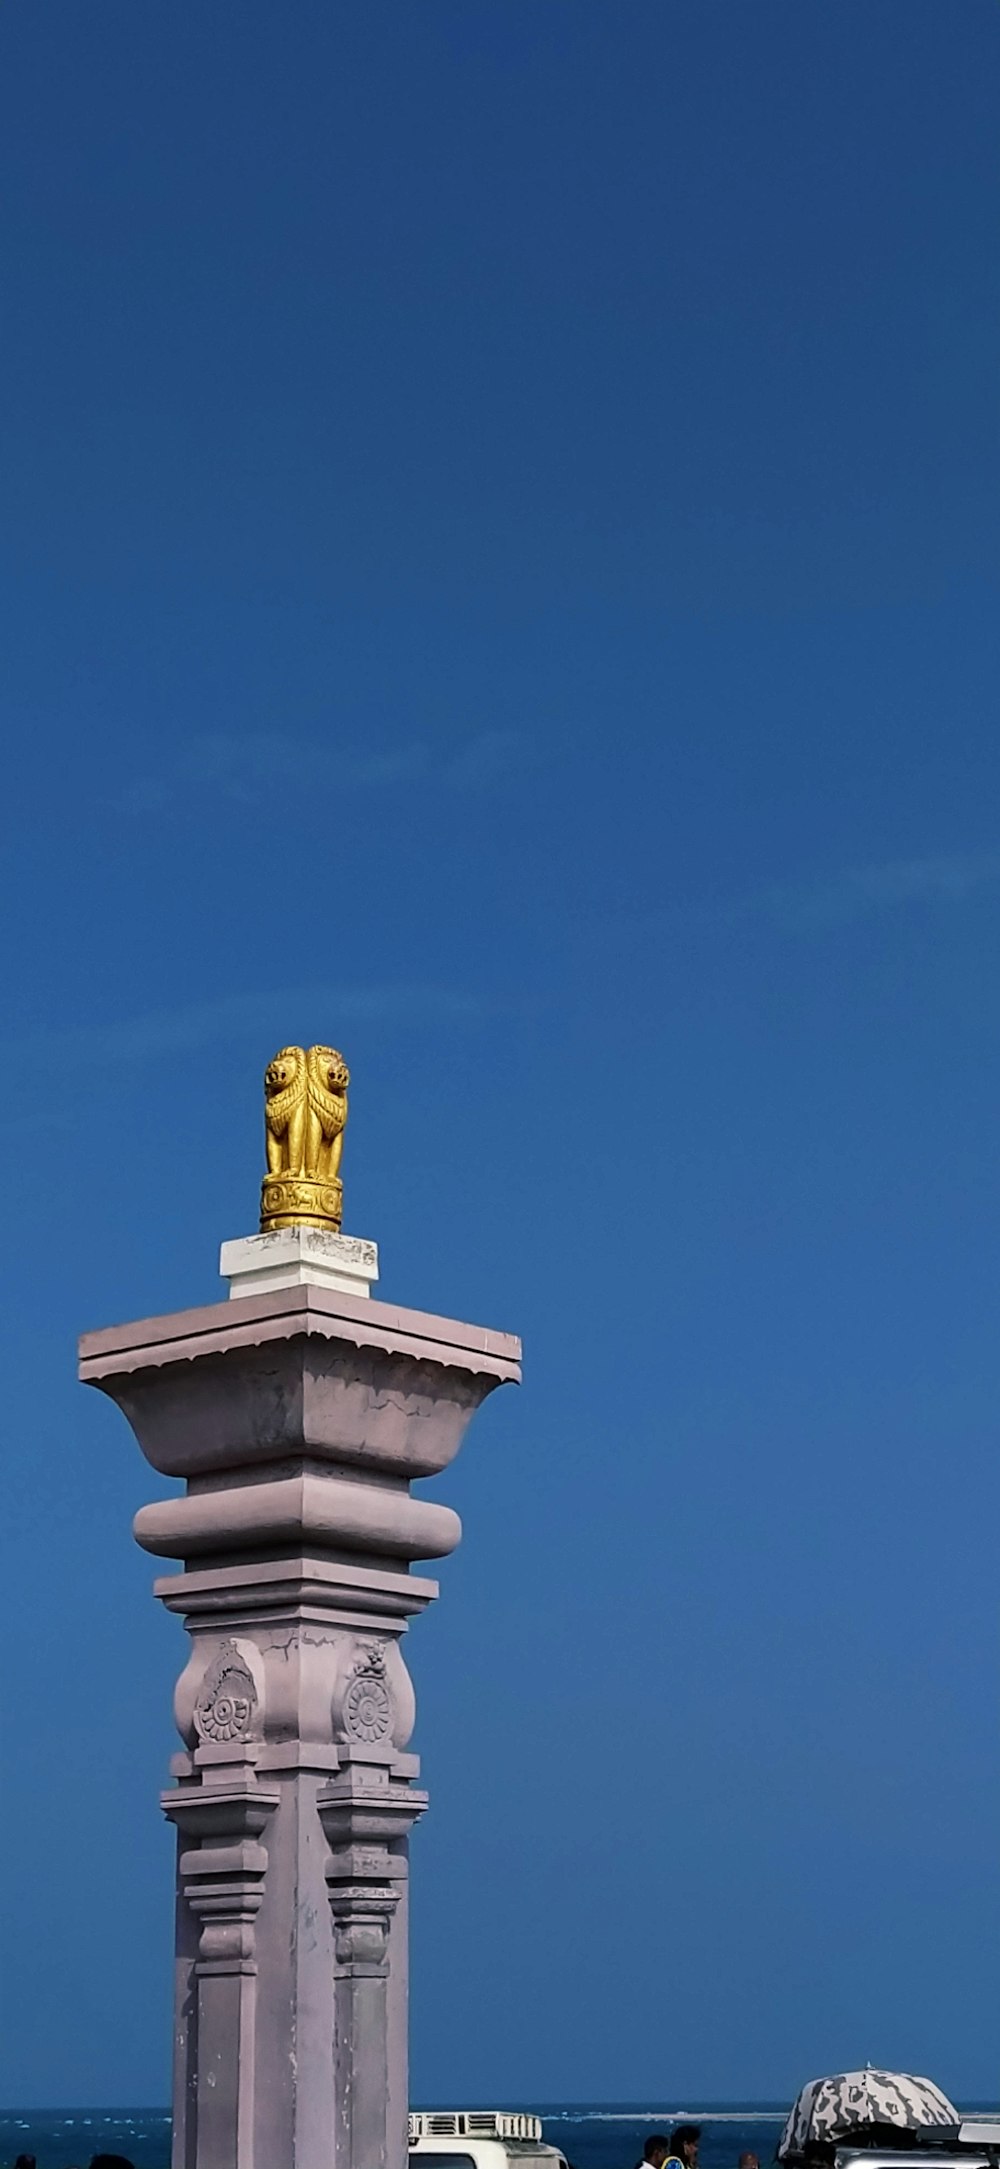 a statue on a pillar